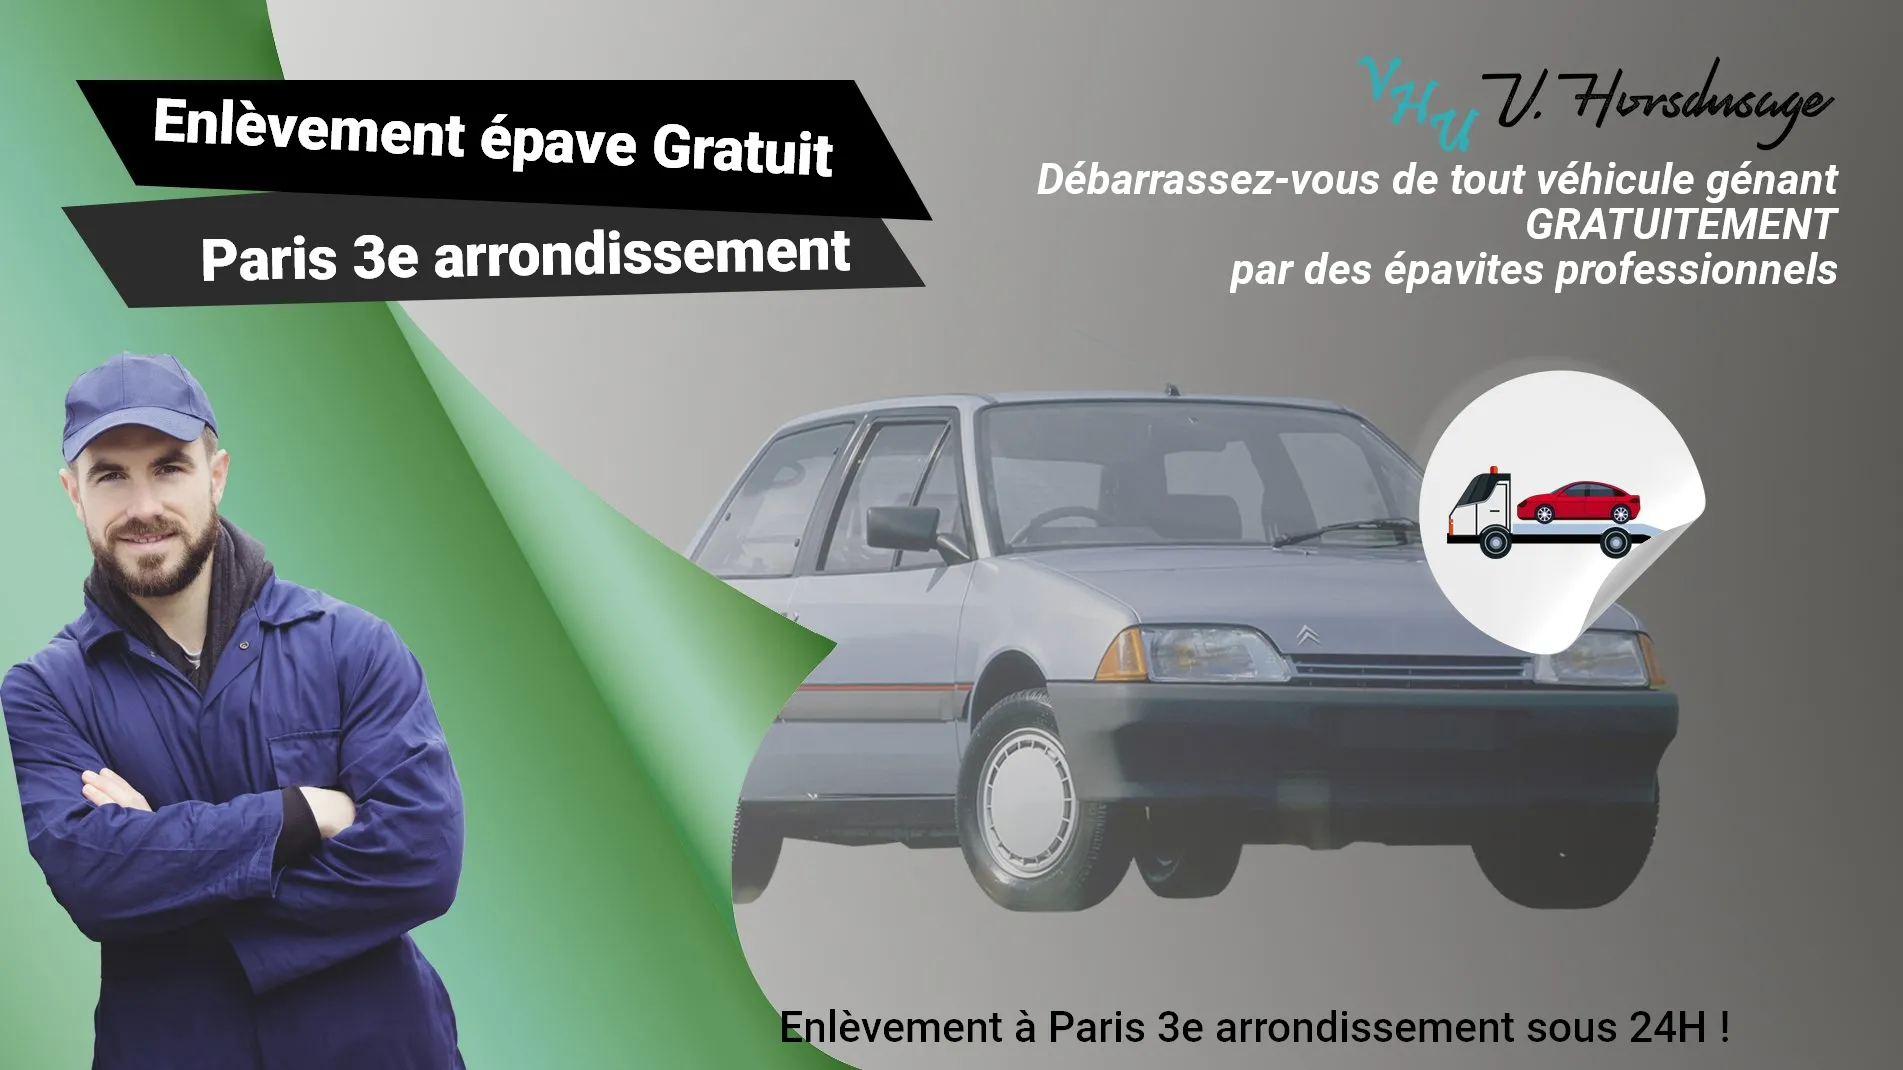 Pour un enlèvement gratuit à Paris 3e arrondissement, contactez nos épavistes agréé VHU